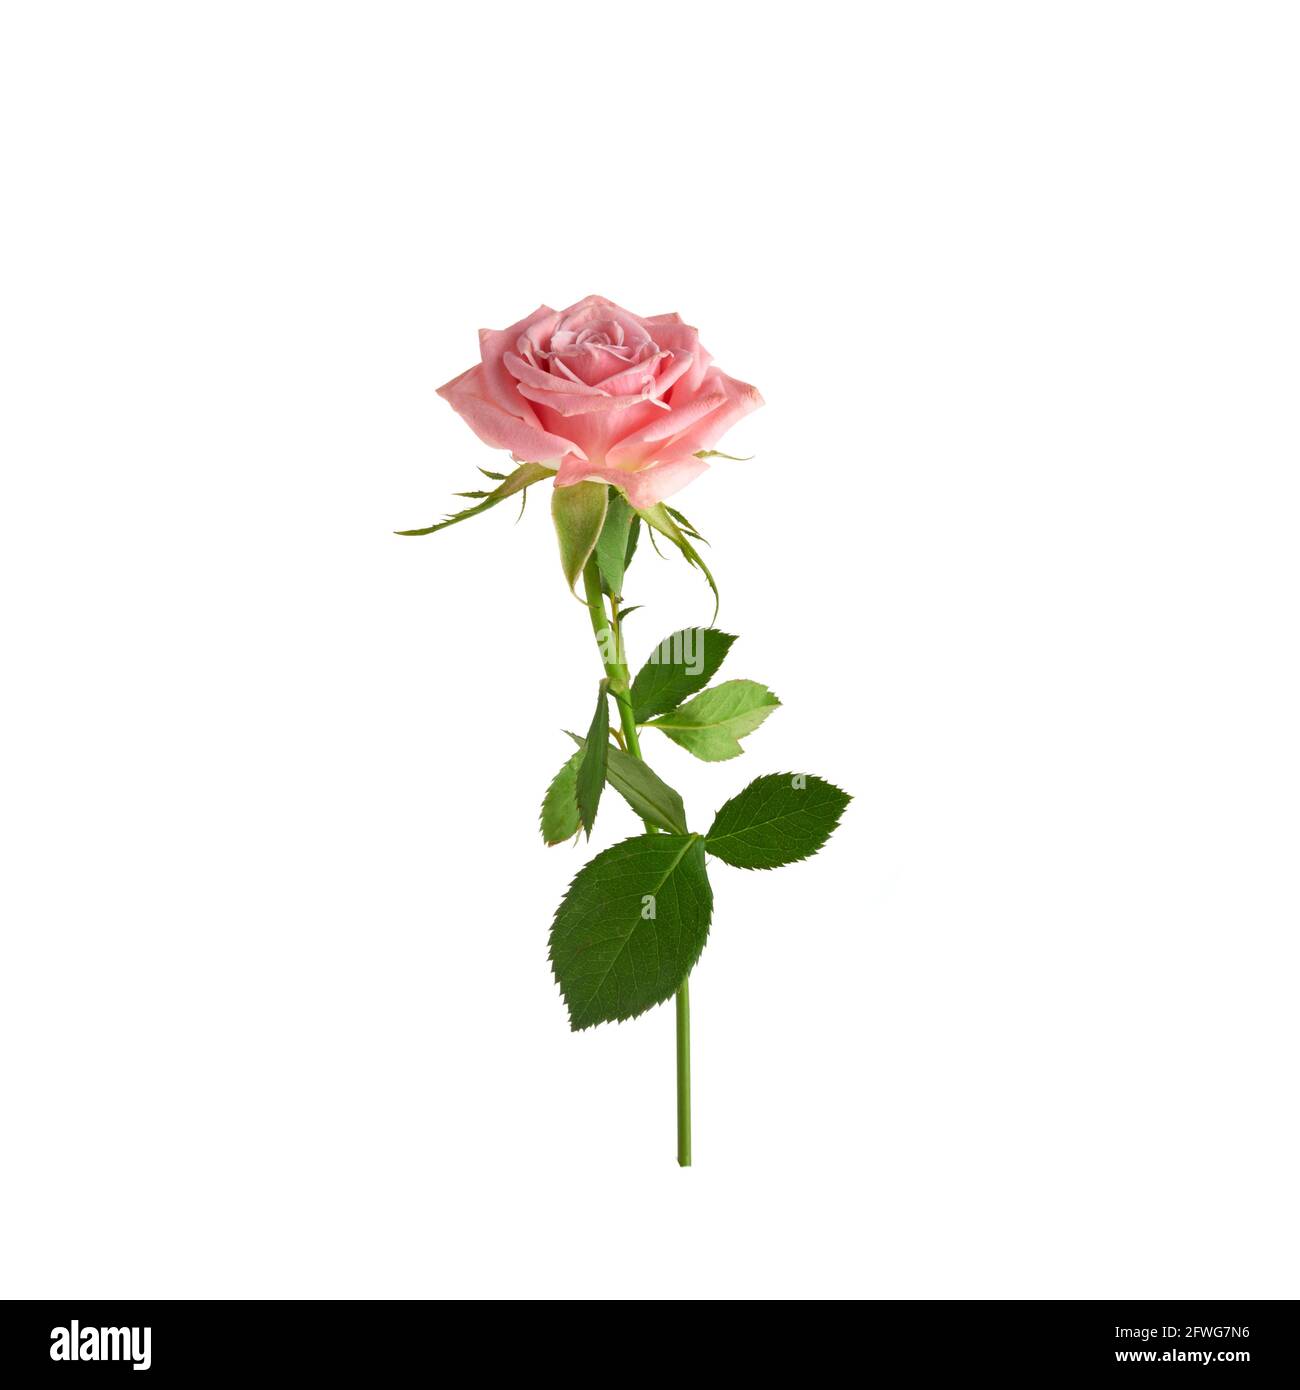 Beautiful single pink rose isolated on white background Stock Photo